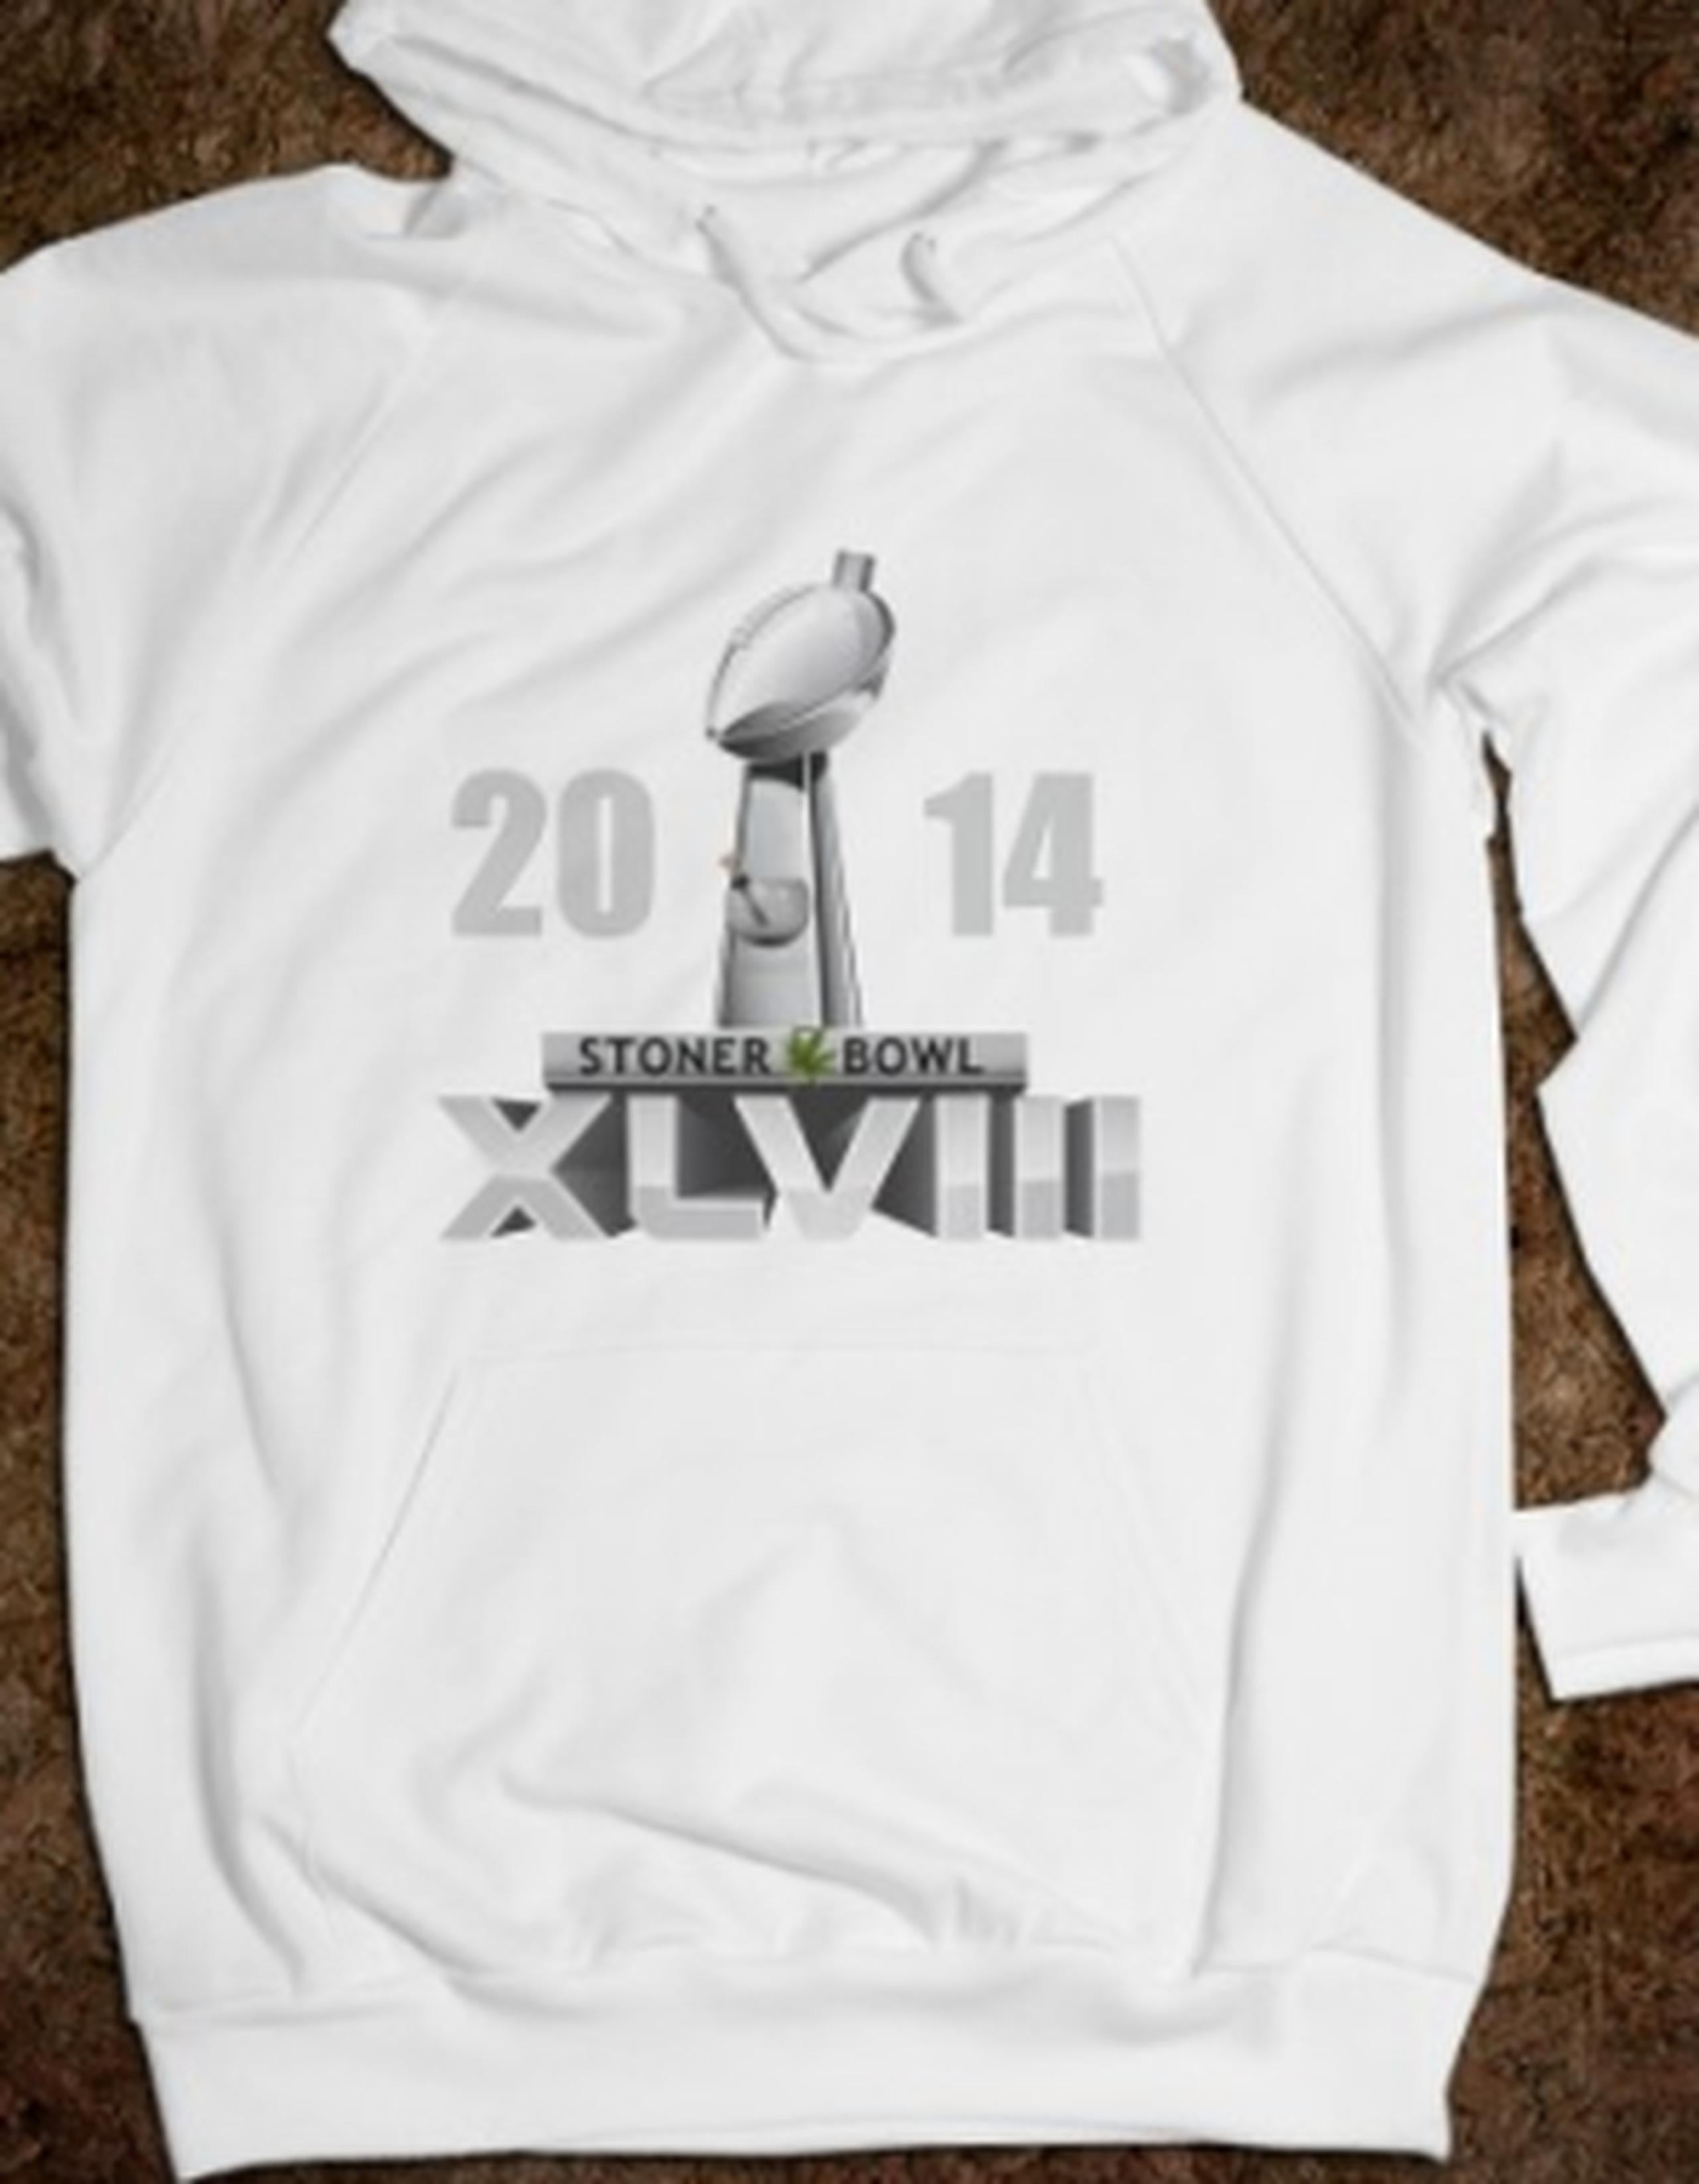 El sitio Web ofrece camisetas y gorras alusivas a esta coincidencia. Una camiseta muestra el trofeo Vince Lombardi, que conseguirá el ganador, modificado como una pipa para marihuana. (www.stonerbowl.org)